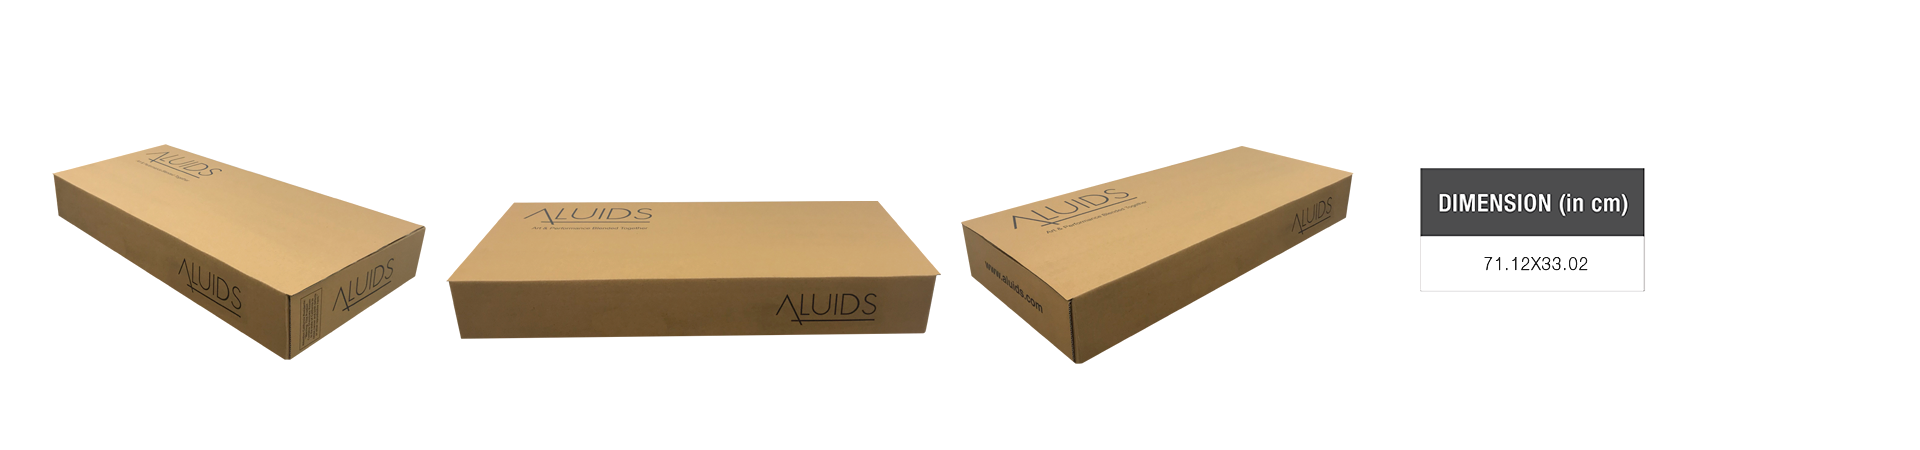 Packaging - aluids